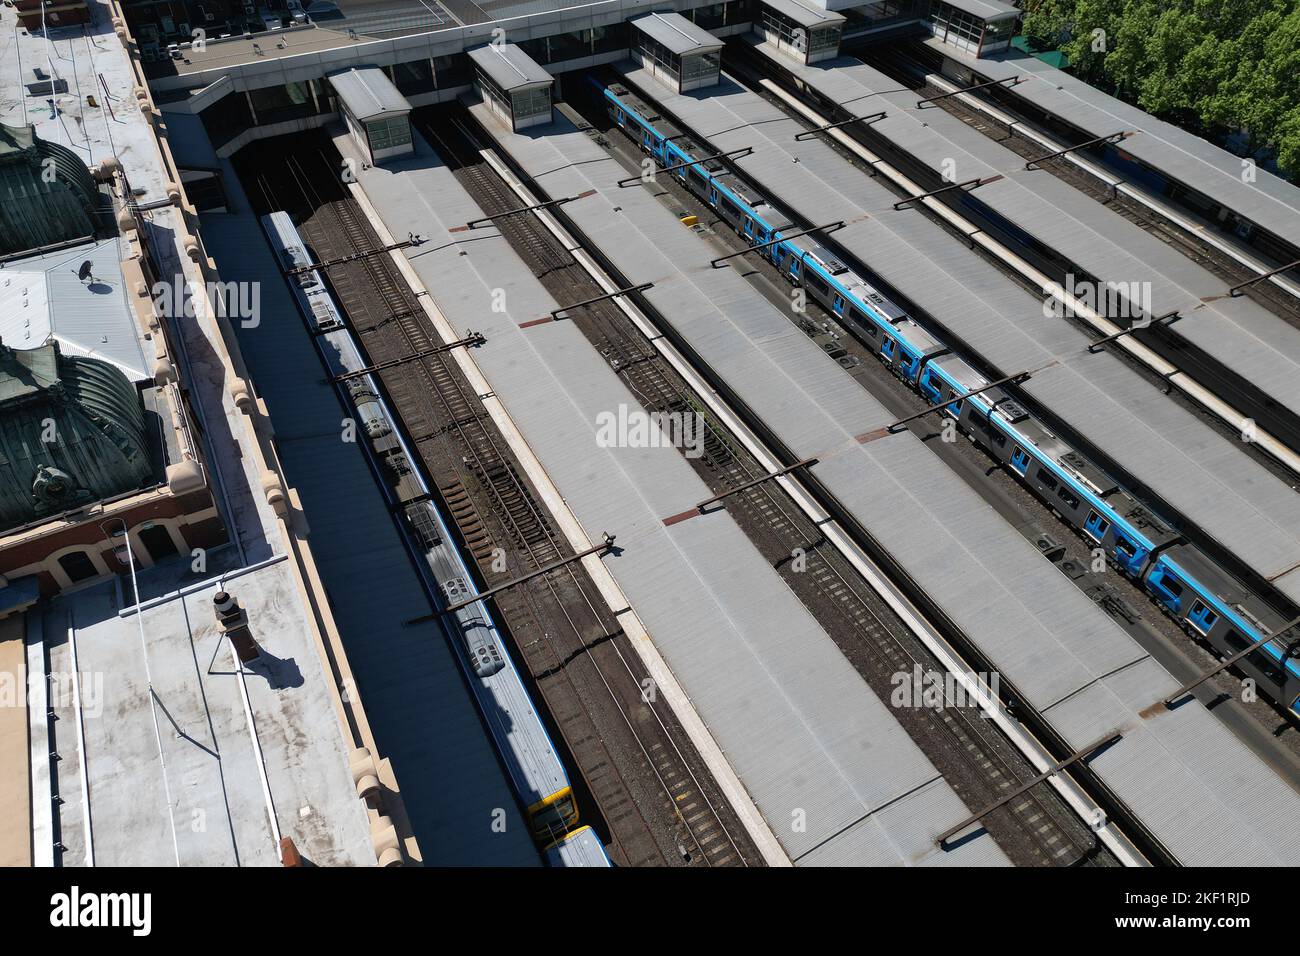 Vue aérienne de la gare de Flinders Street, Melbourne, Australie Banque D'Images